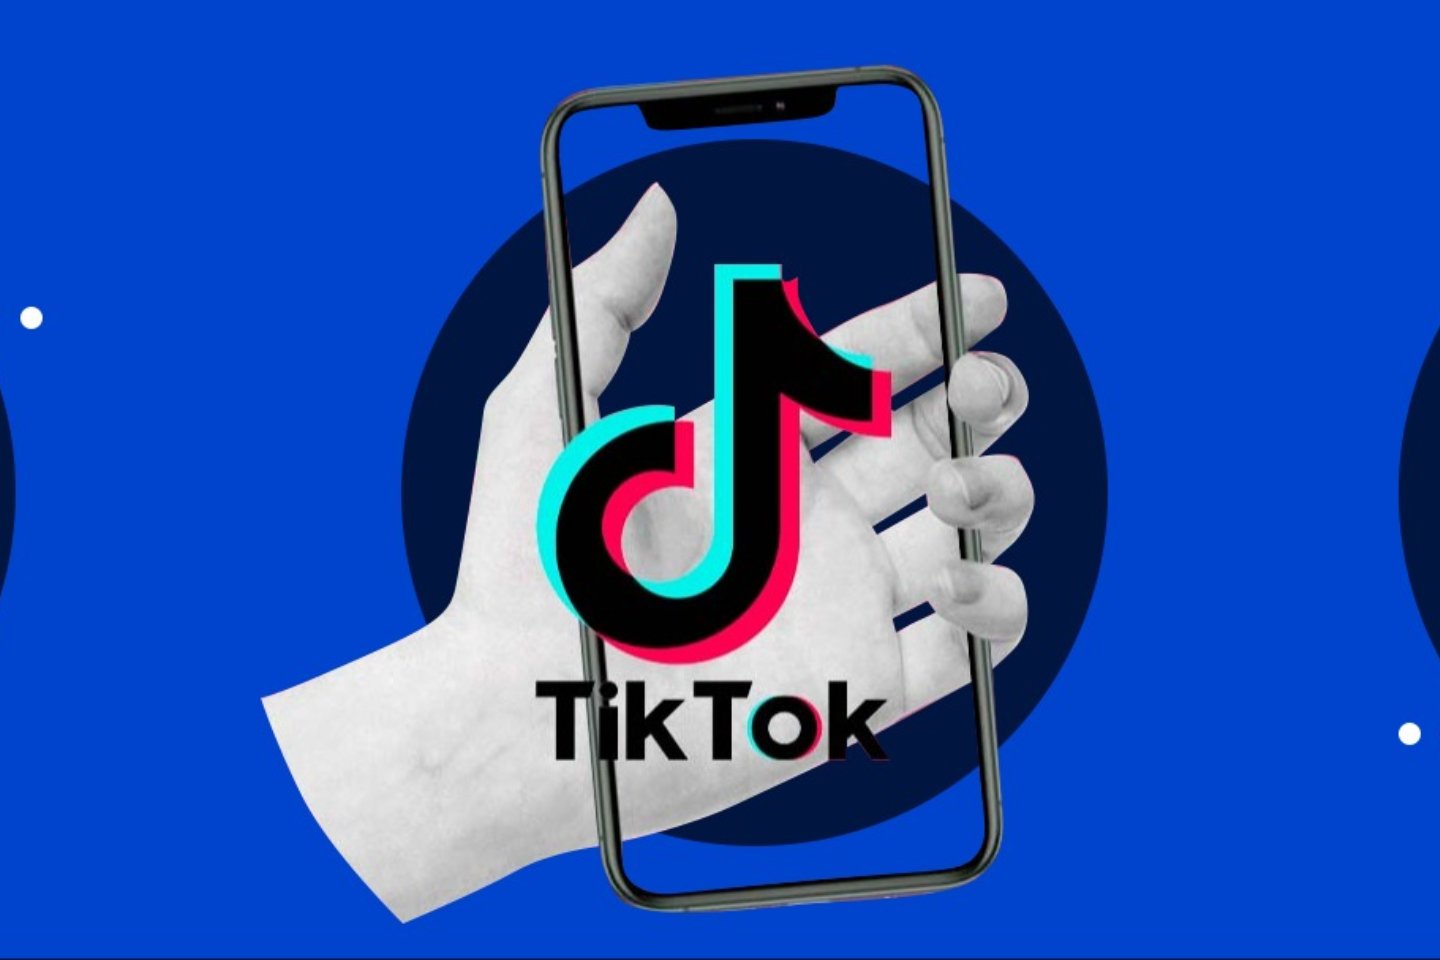 Партнерские материалы / TikTok обновляет Правила сообщества для обеспечения прозрачности принципов работы платформы